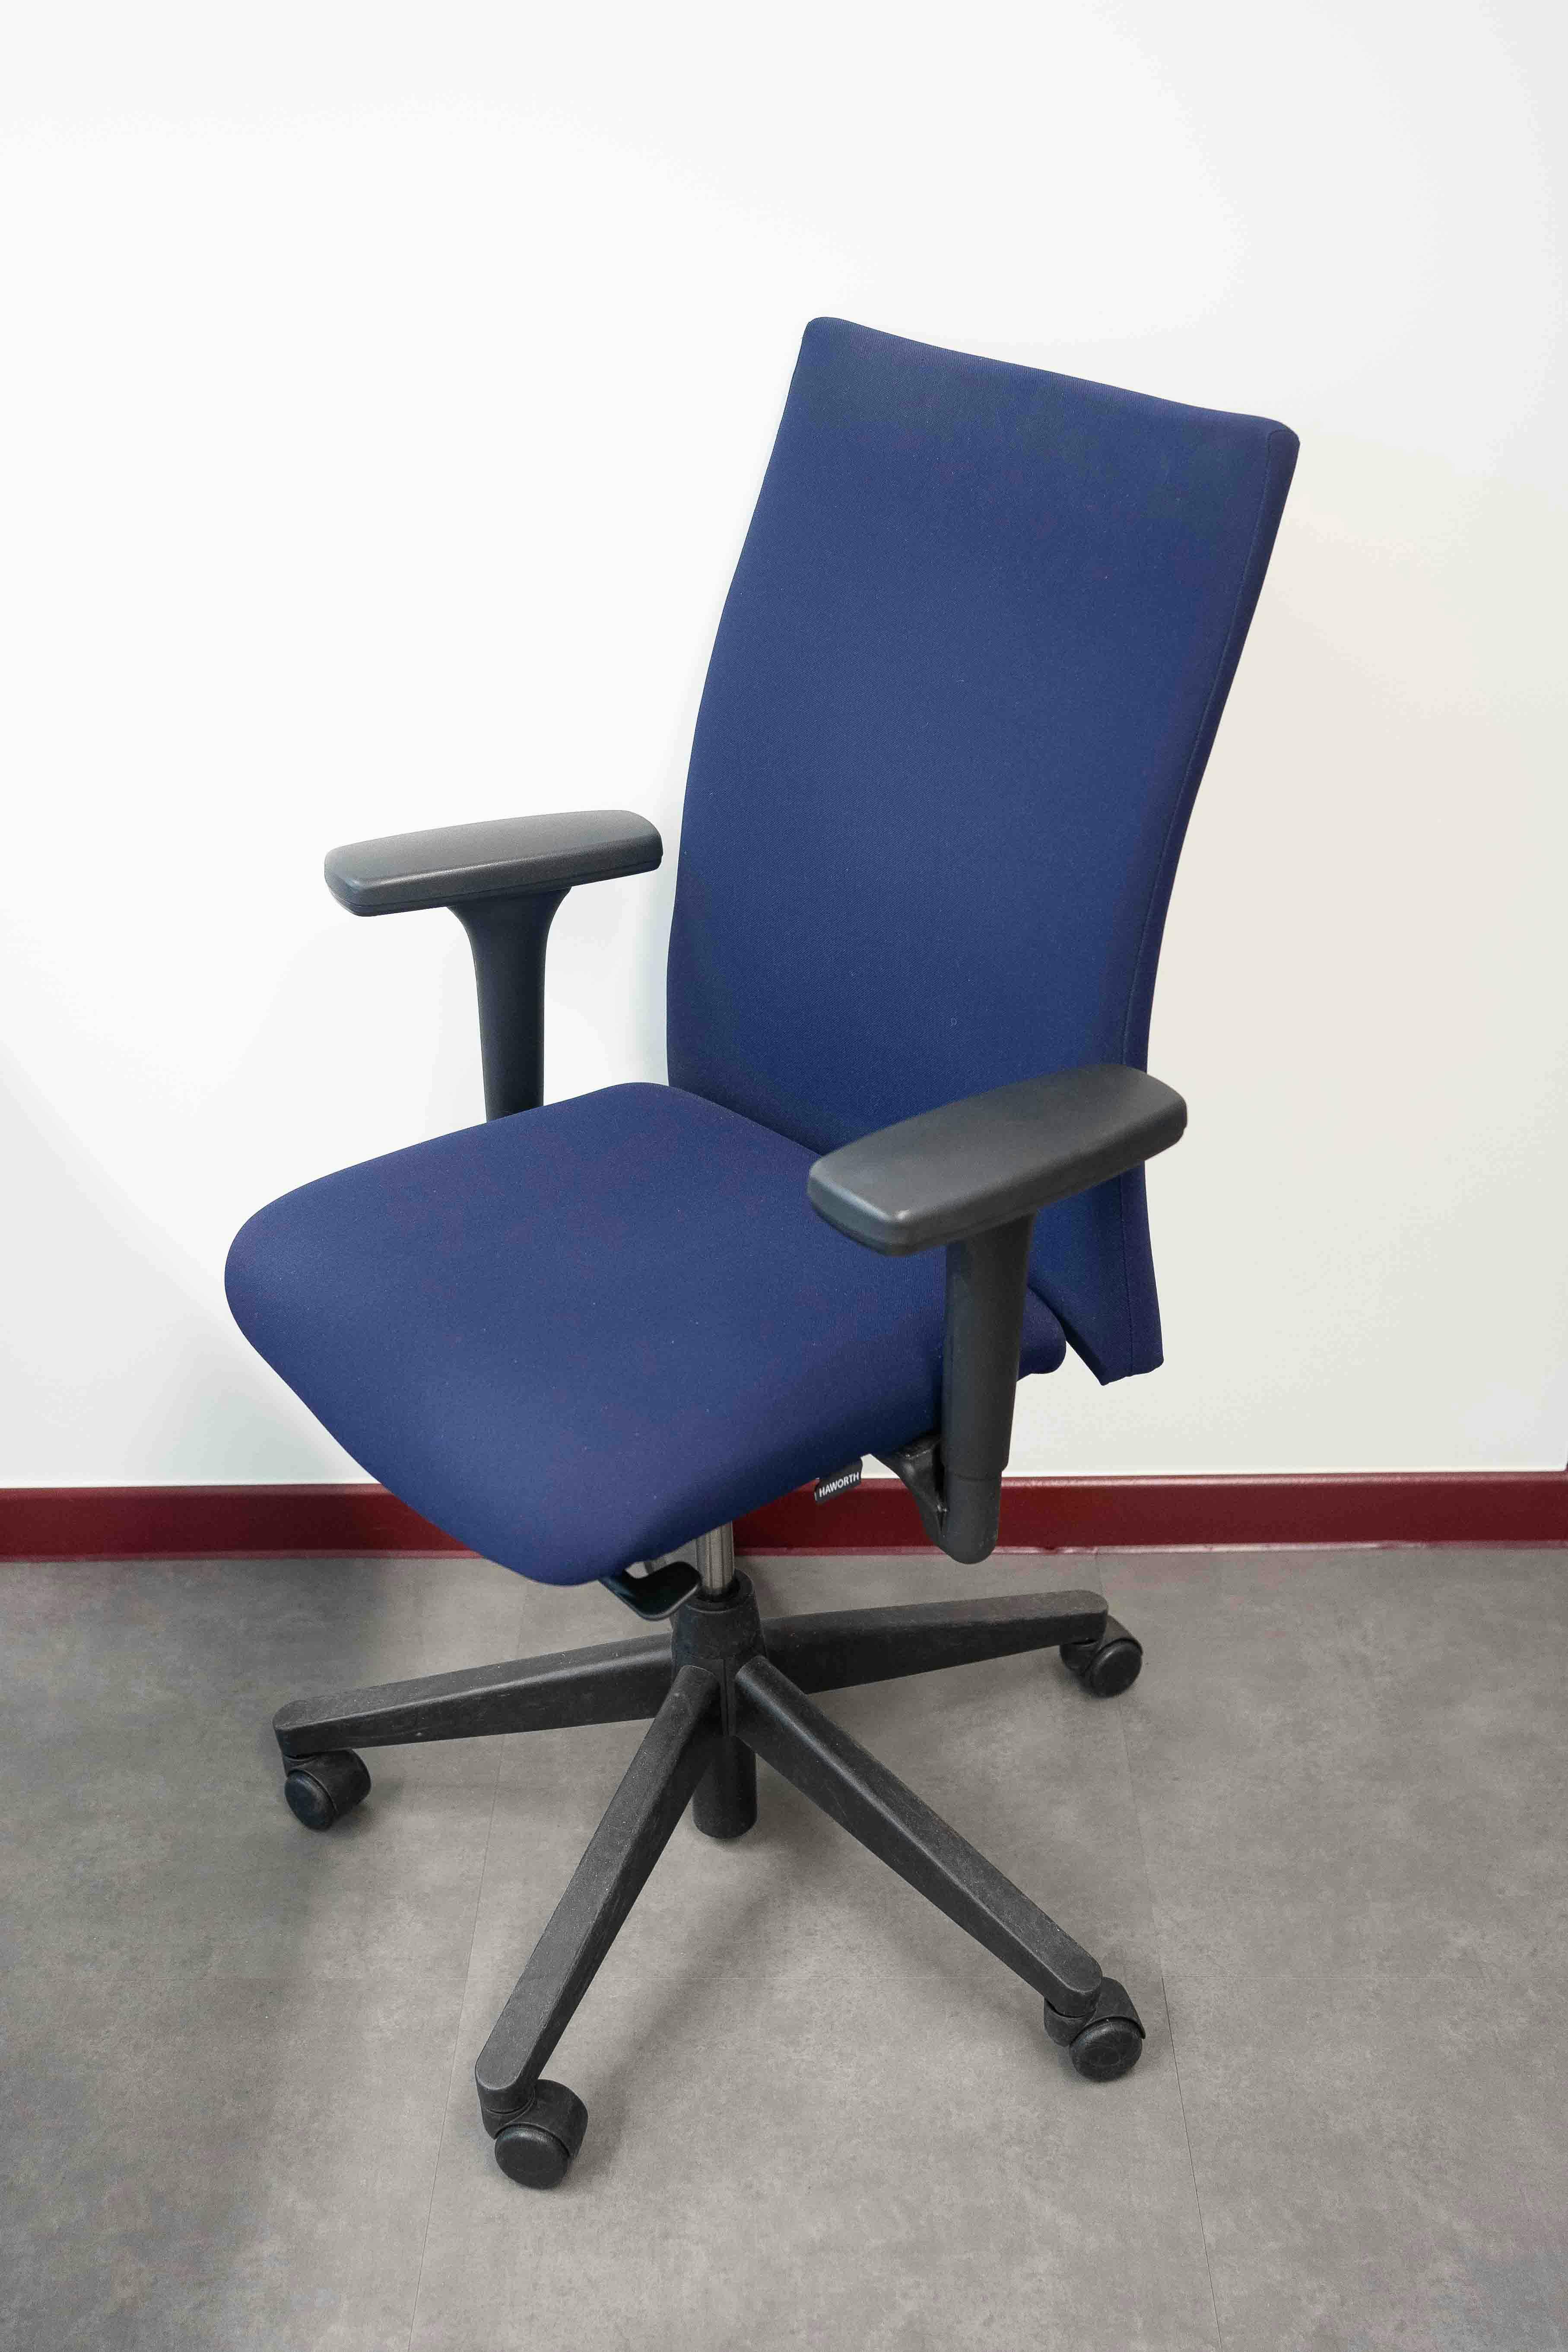 HAWORTH Comforto chaises de bureau ergonomiques bleu marine sur roulettes noires - Relieve Furniture